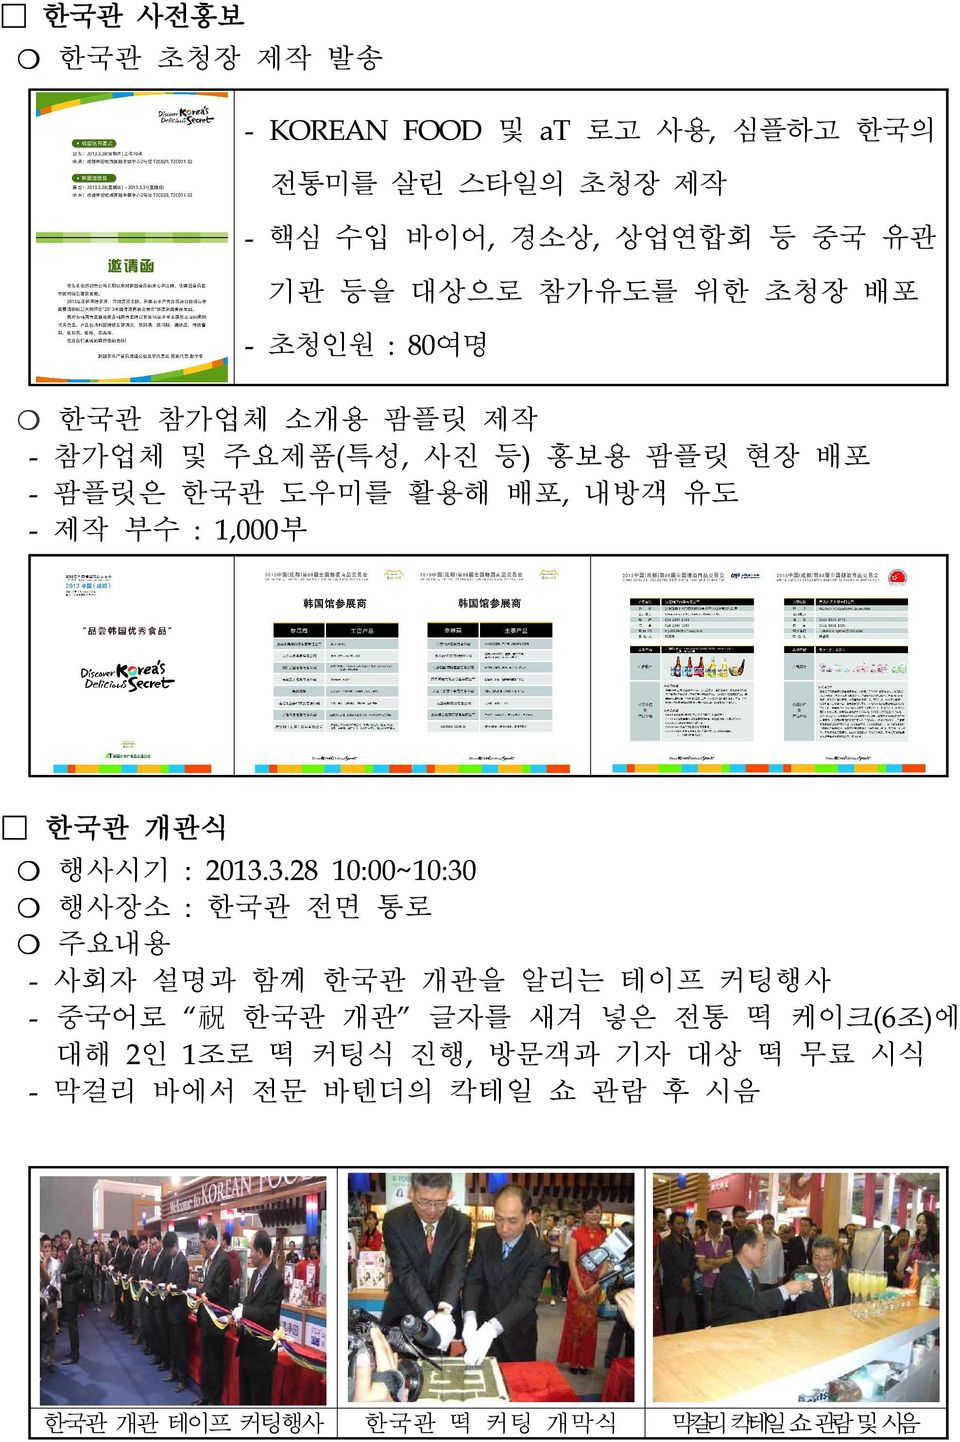 1,000부 한국관 개관식 행사시기 : 2013.